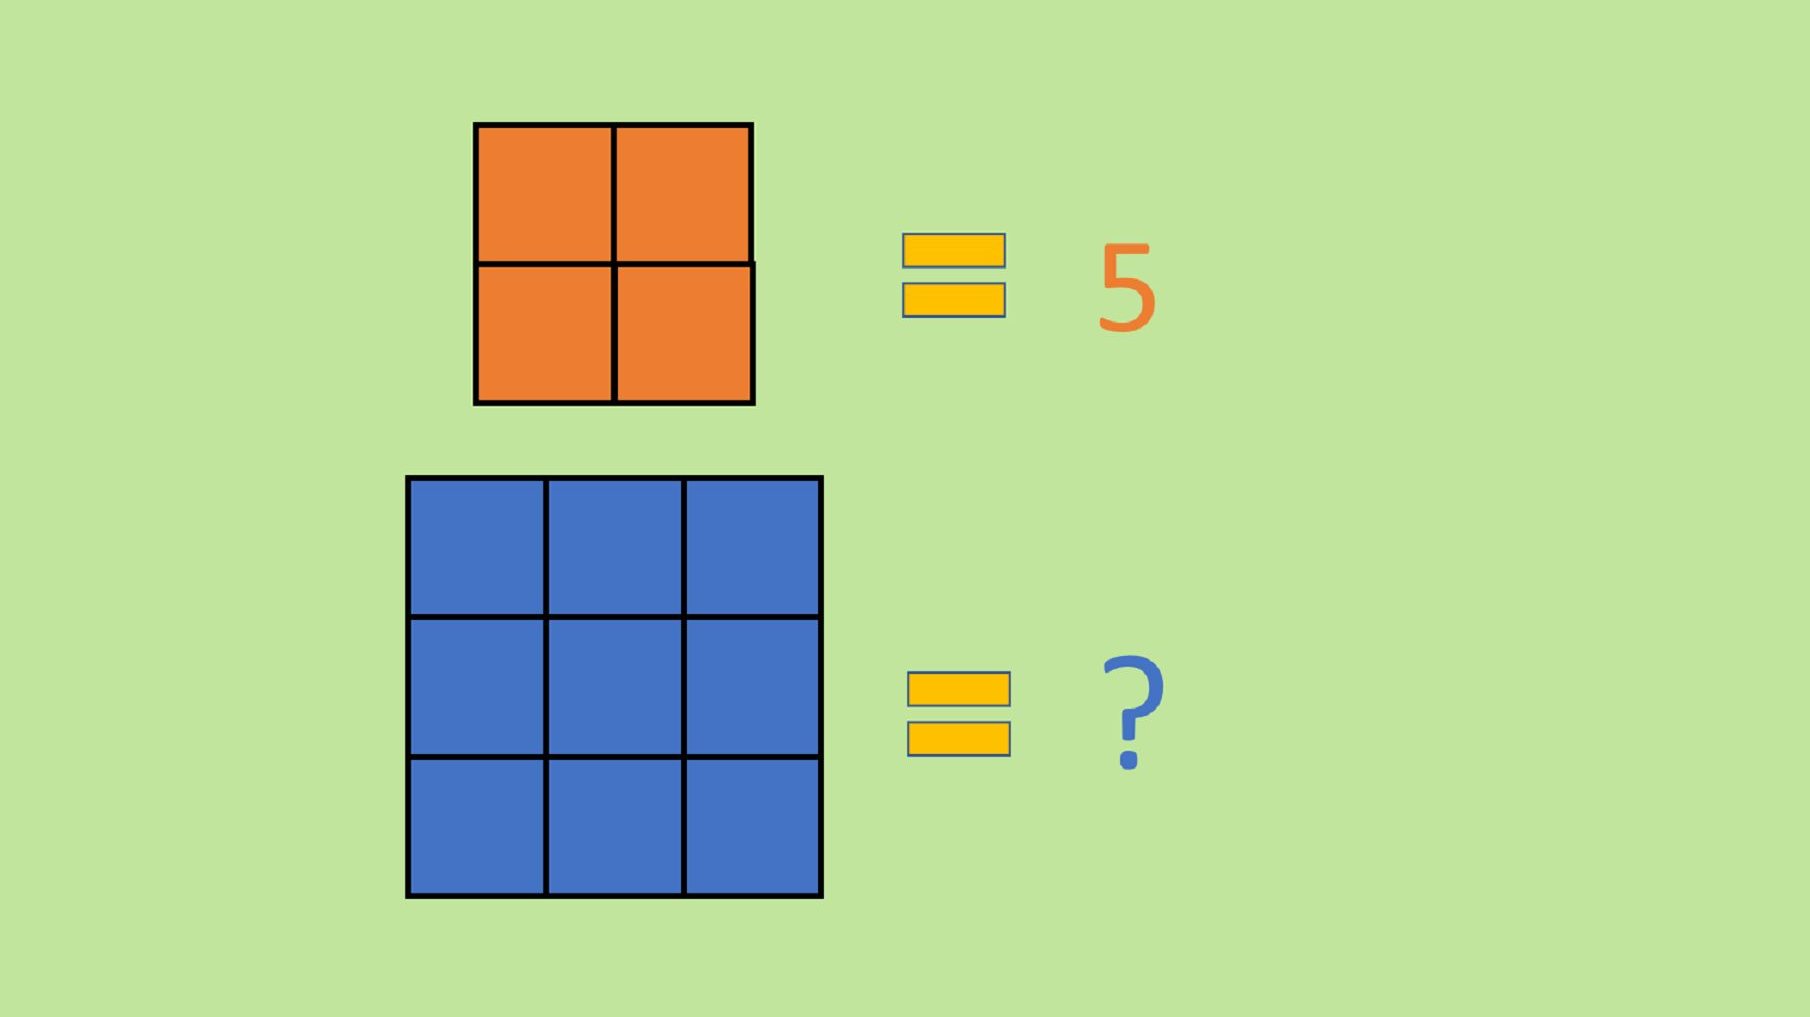 Um quadrado é uma figura geométrica que se caracteriza por ter quatro lados, paralelos dois a dois, e quatro ângulos retos